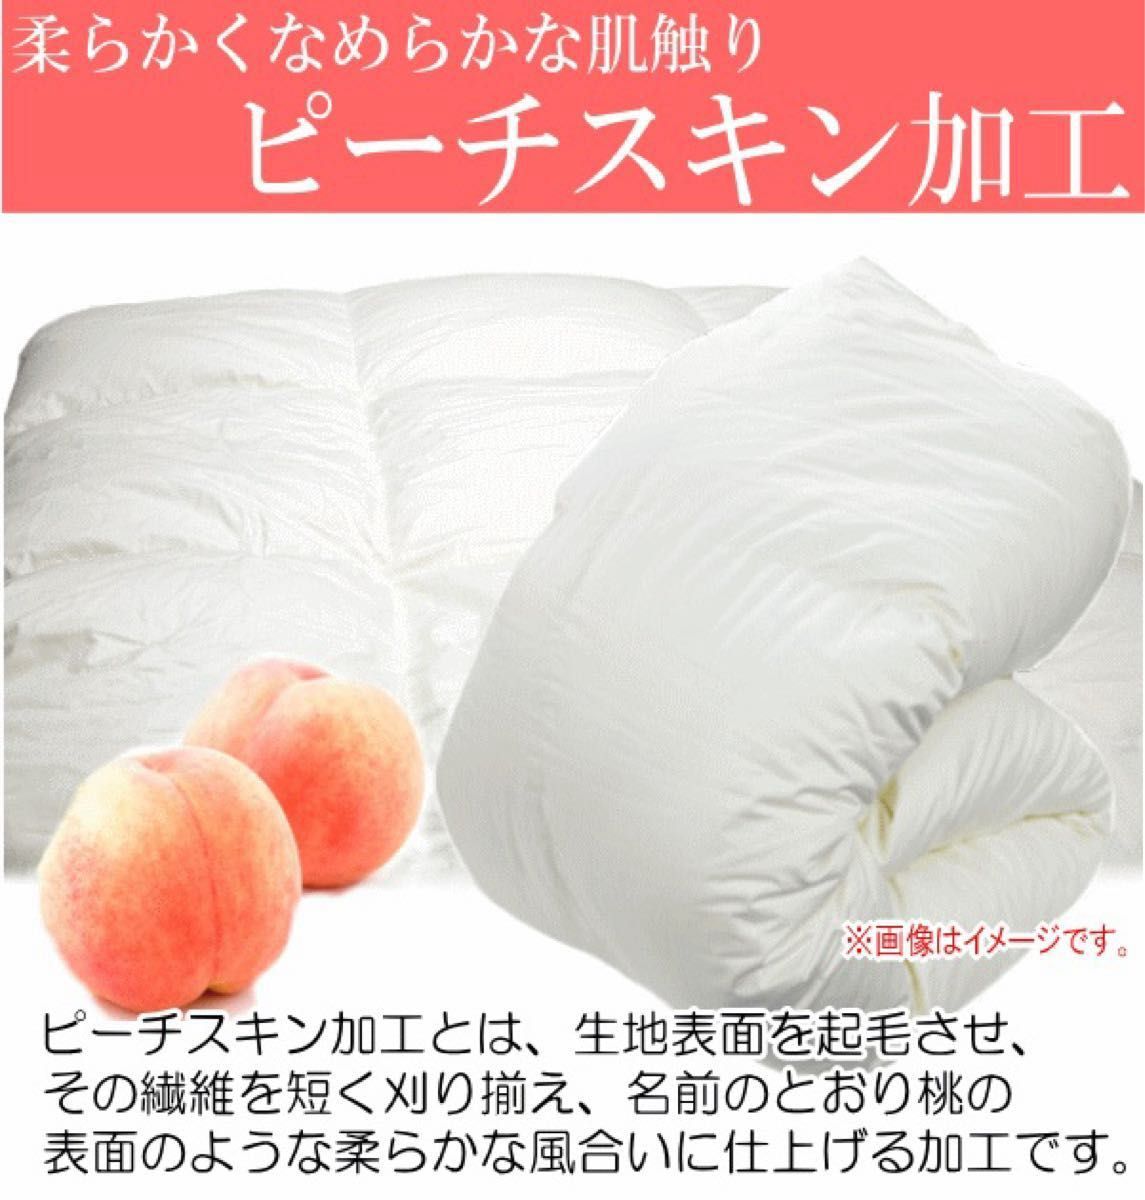 羽毛布団 シングル ポーランド産ホワイトマザーグース 二層キルト 超長綿 ロイヤルゴールドラベル 日本製 生成り